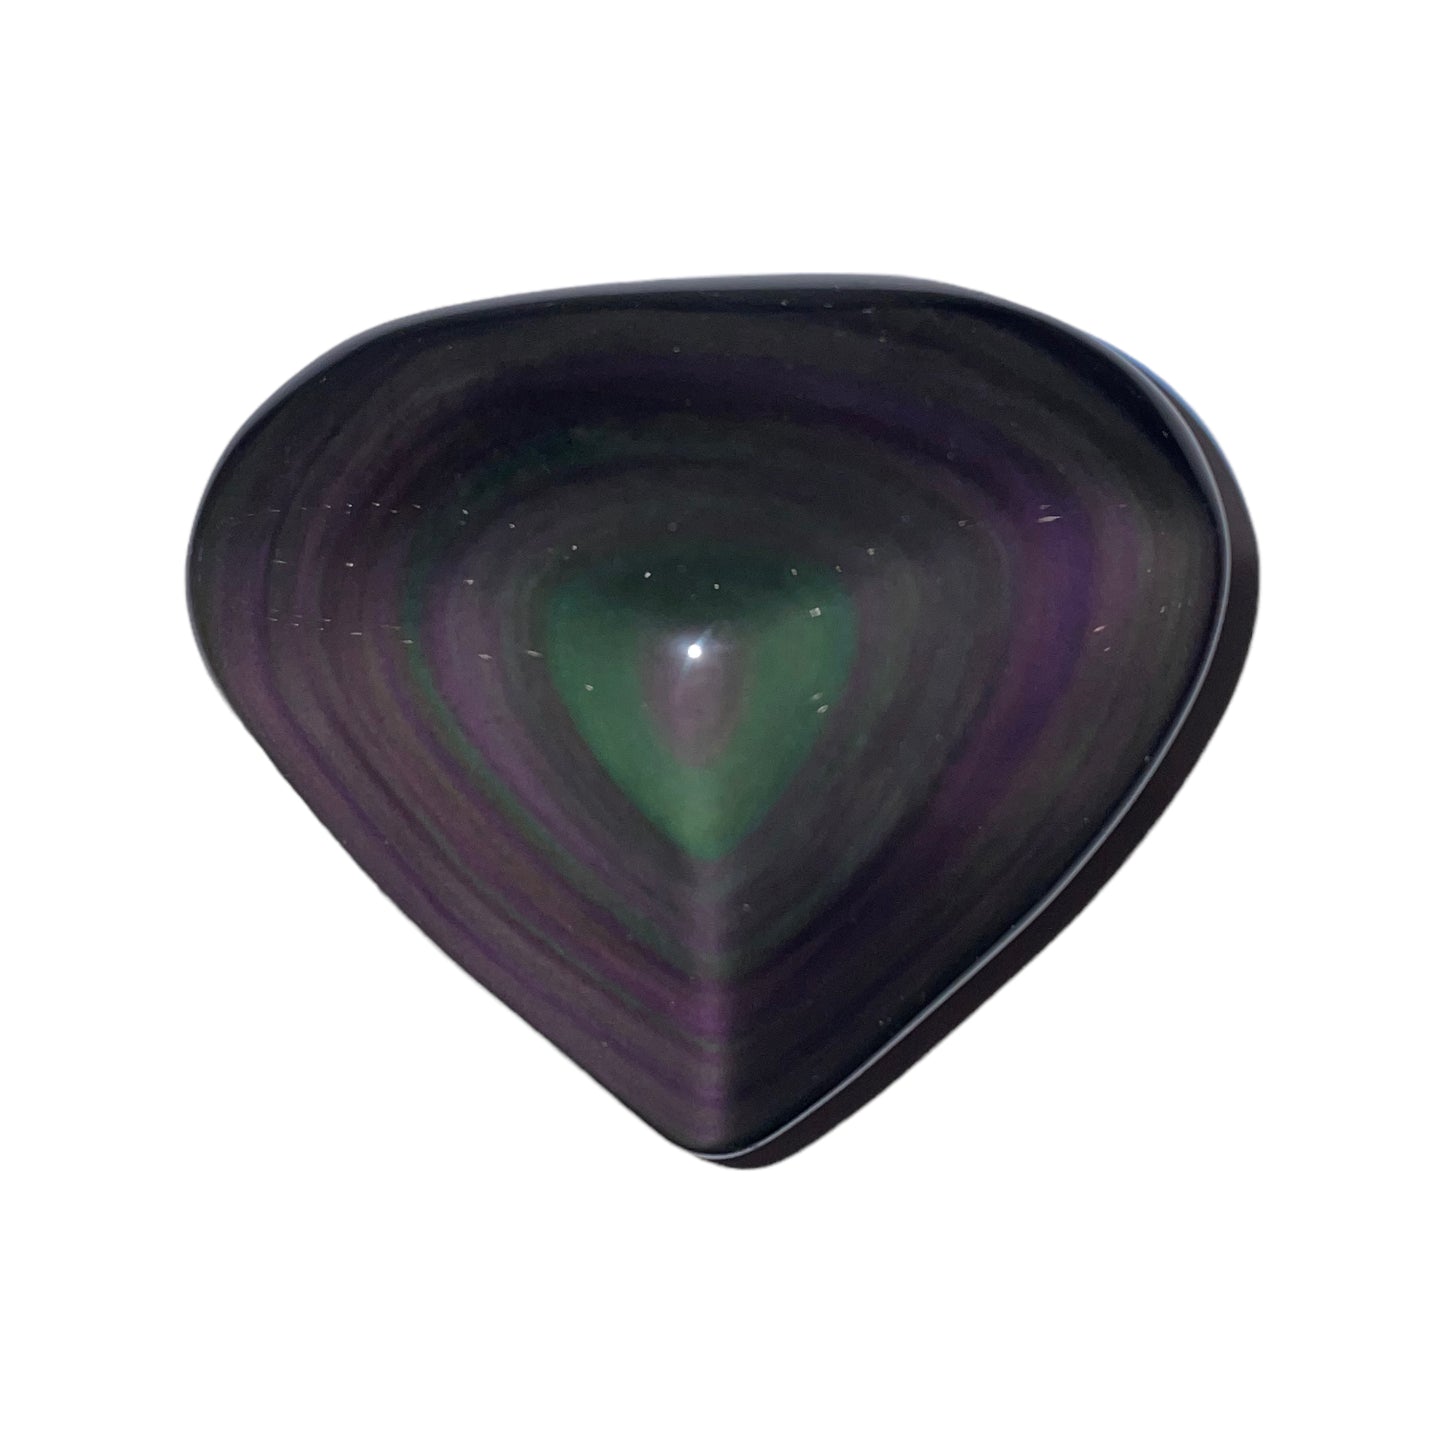 Obsidian heart celestial eye per kg